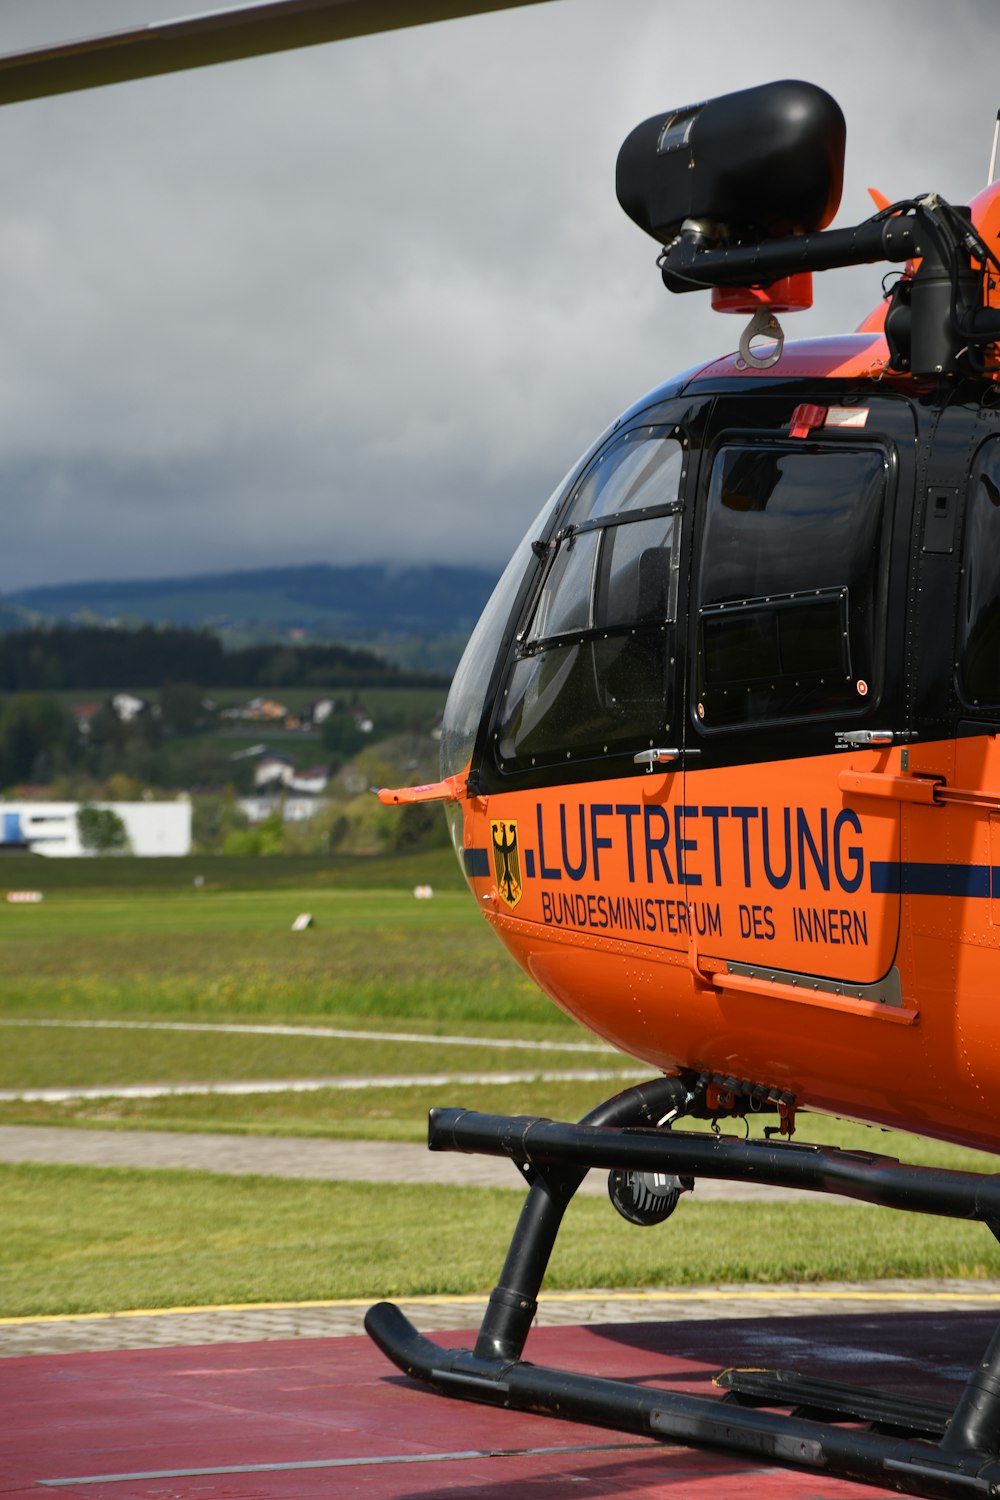 elicottero arancione e nero sul campo di erba verde durante il giorno